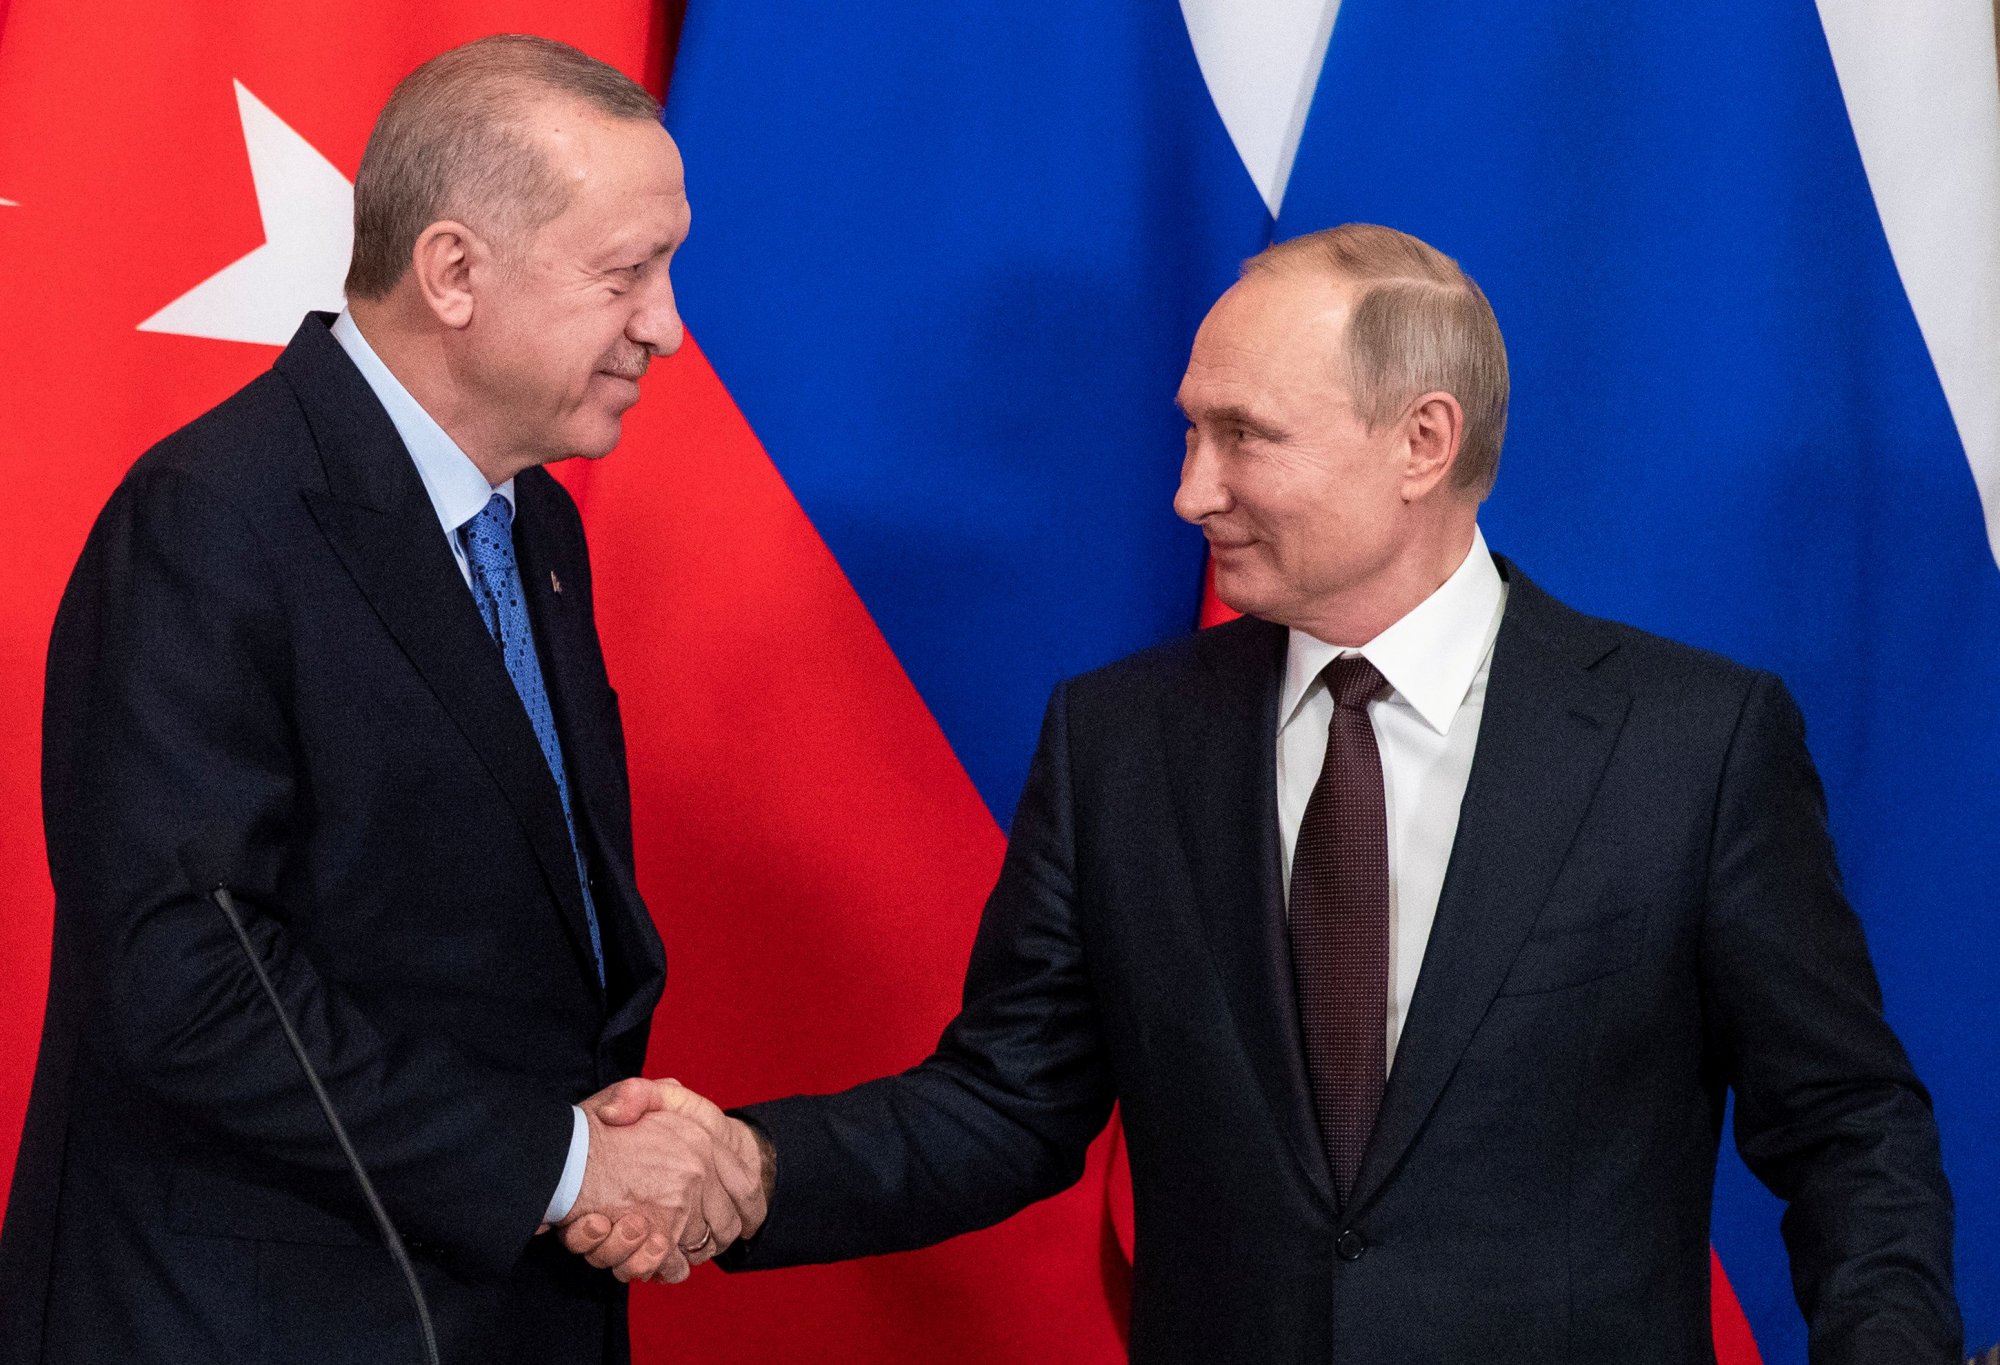 Ο Ερντογάν συνεχάρη τον Πούτιν για τη νίκη του - Τι συζήτησαν